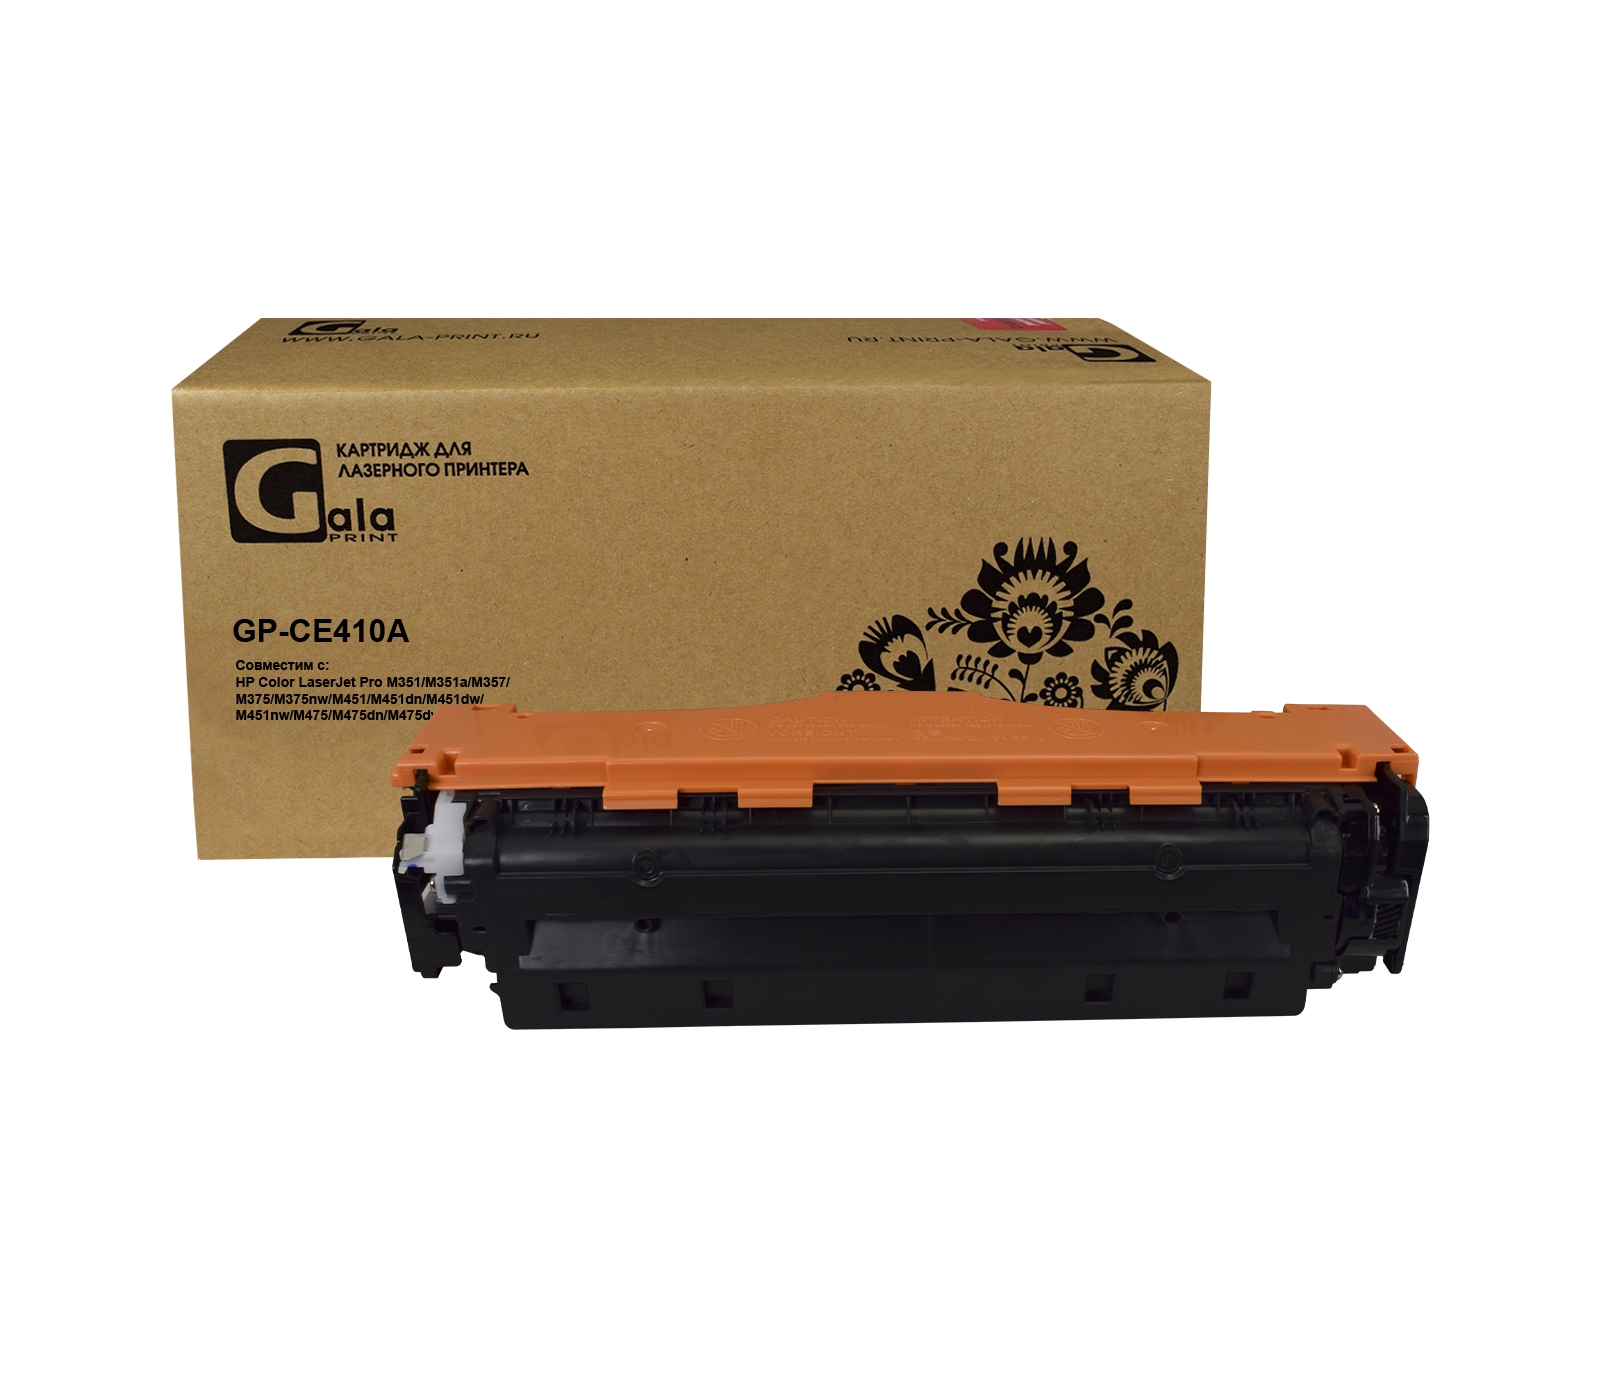 Картридж GP-CE410A (№305A) для принтеров HP Color LaserJet Pro M351/Pro 400 color MFP M475dn/M475dw/Pro 400 color M451dn/M451dw/M451nw Black 2200 копий GalaPrint